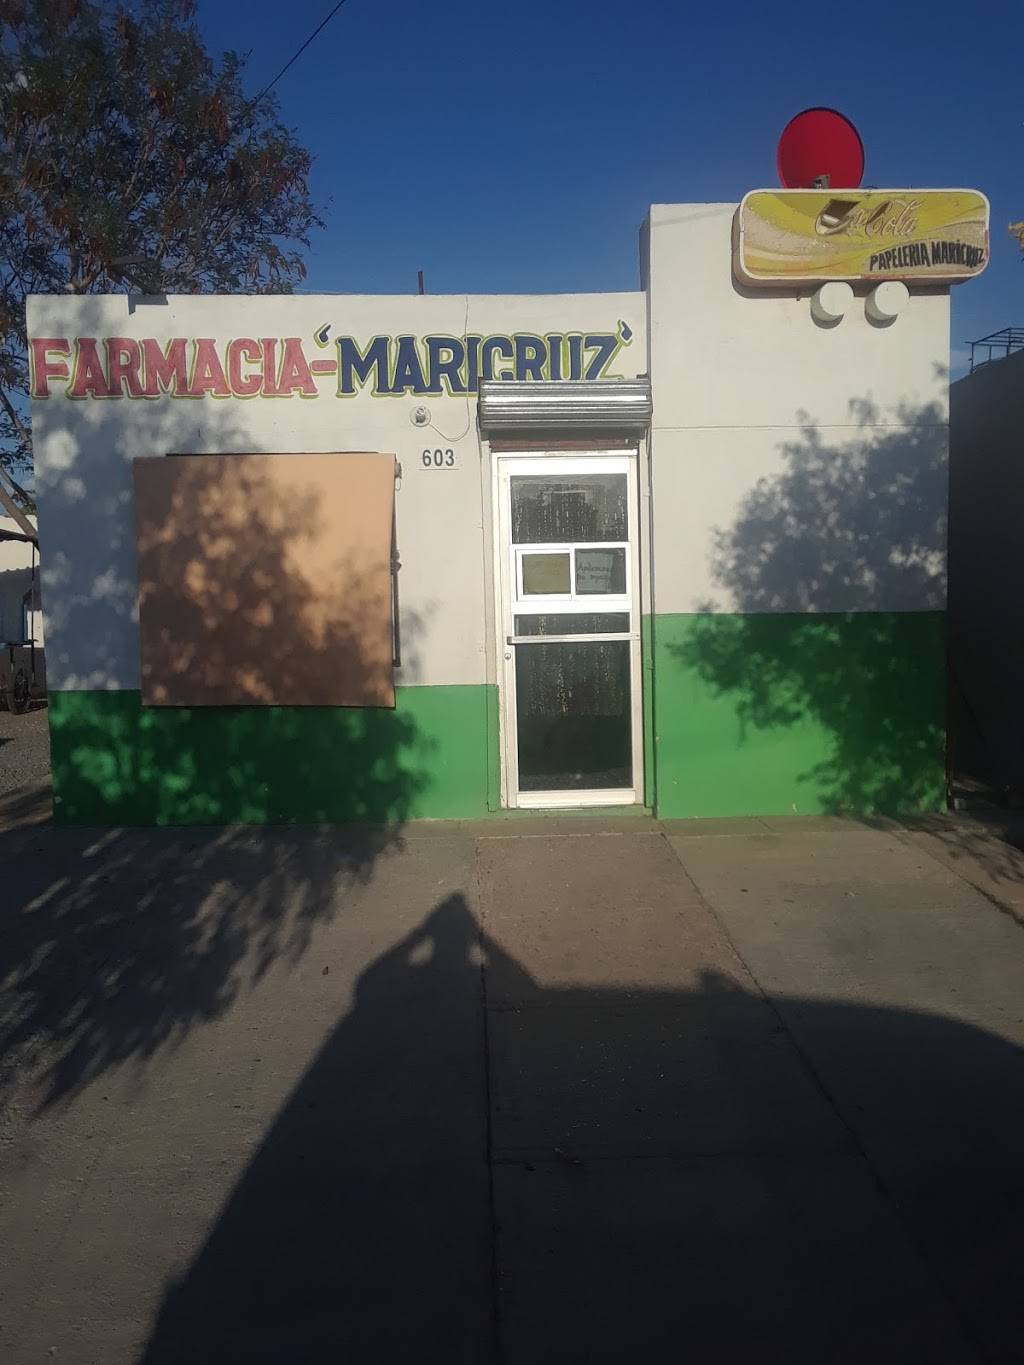 Farmacia Maricruz | Av. Sta. Catalina 603, Villas de San Miguel, 88000 Nuevo Laredo, Tamps., Mexico | Phone: 867 160 6846